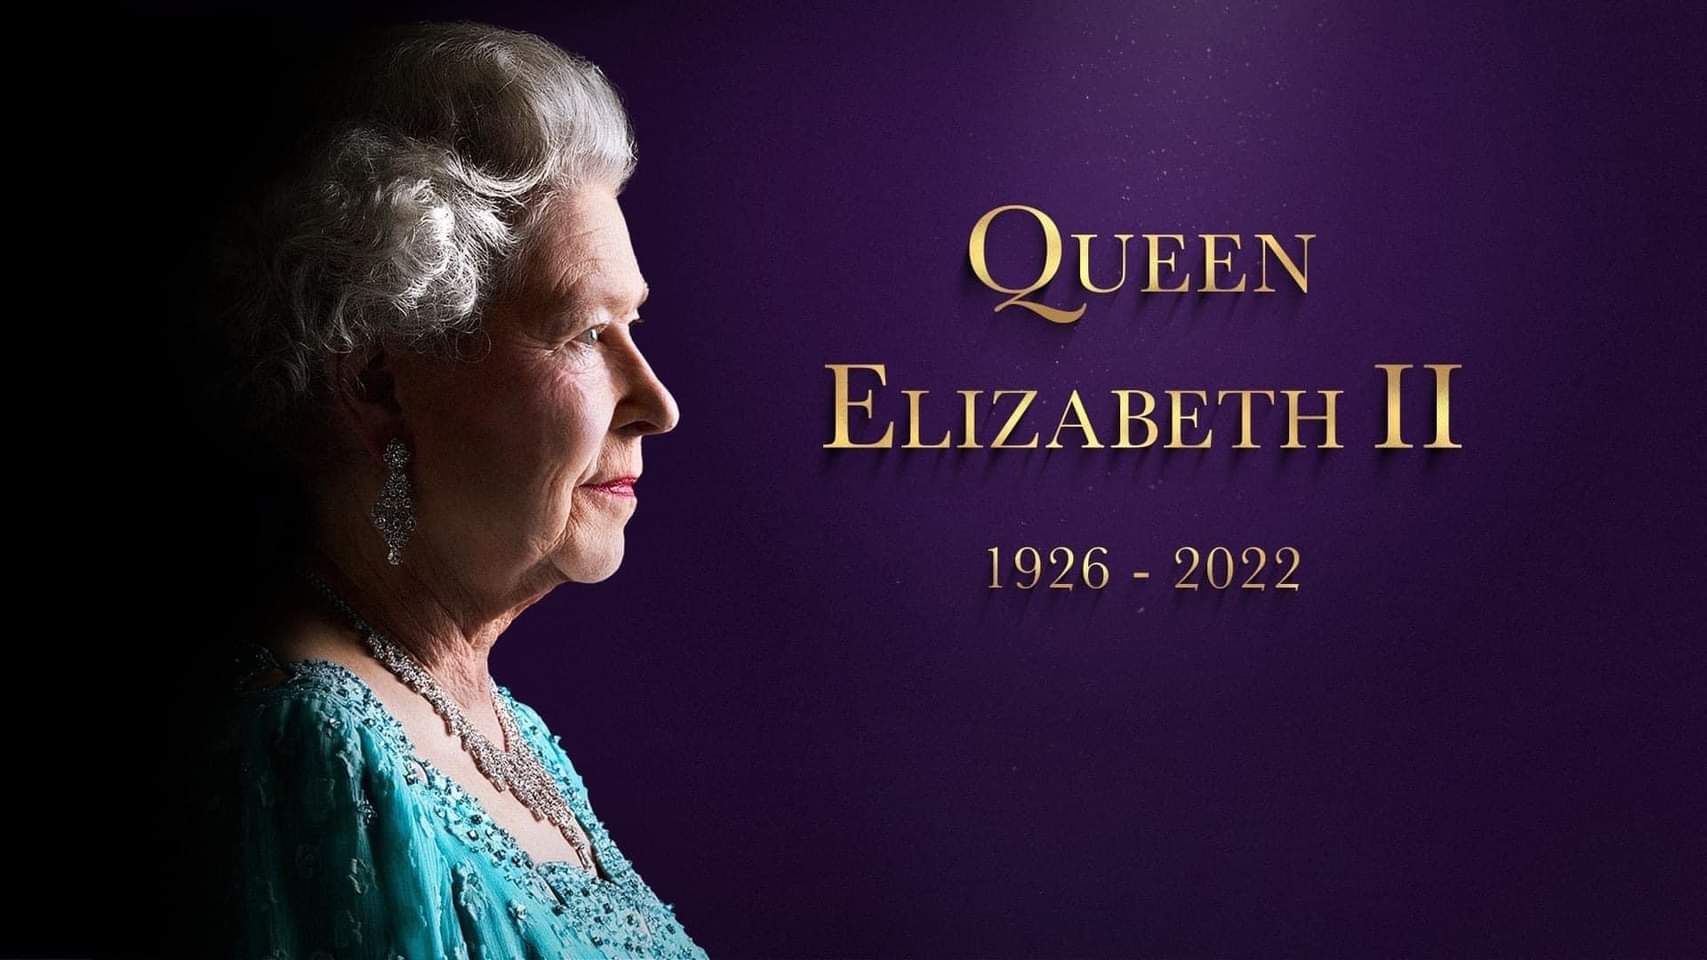 Rest In Peace Queen Elizabeth II - FarSite Communications Ltd